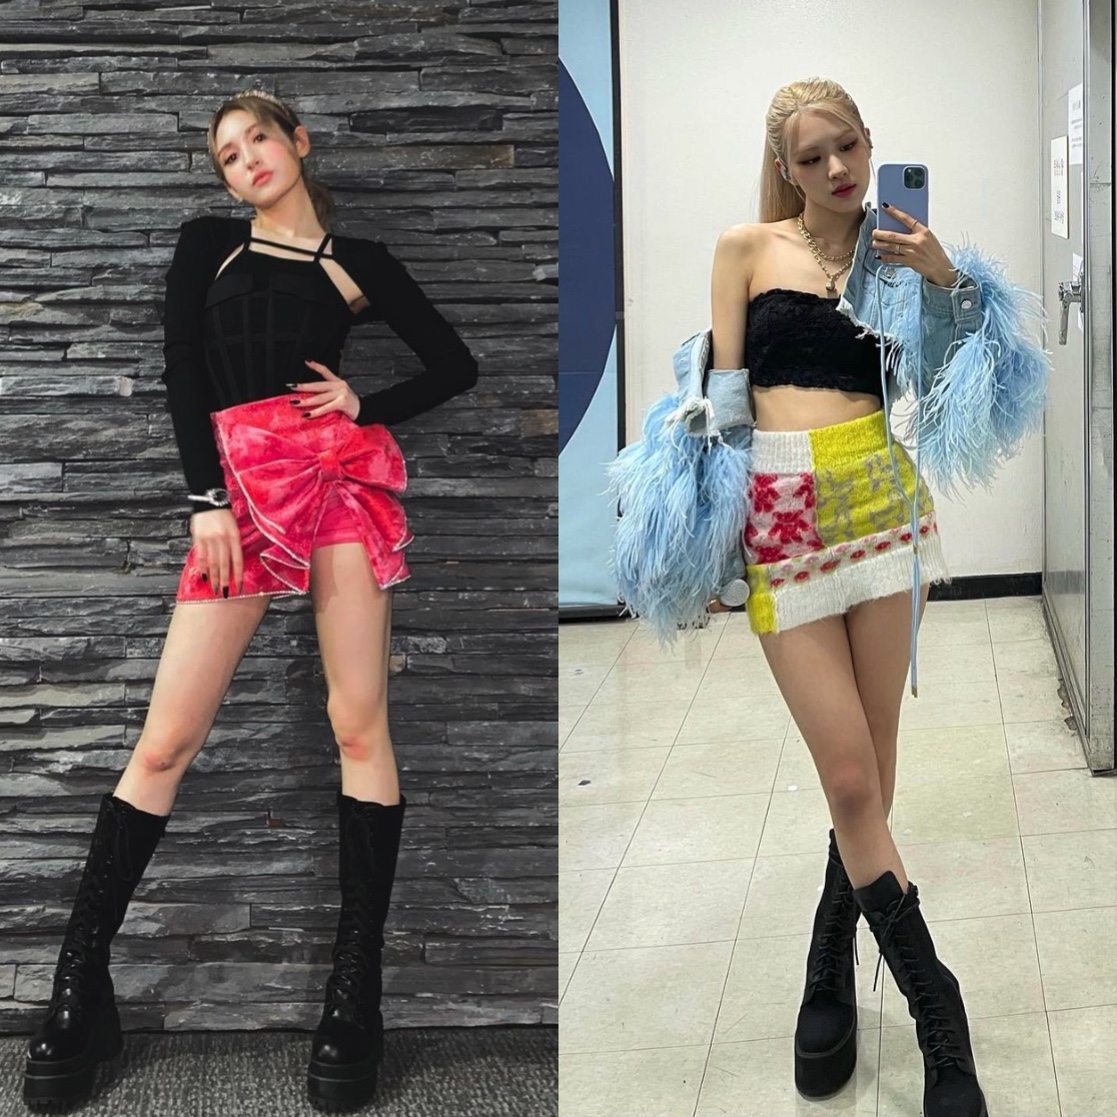 Không chỉ vậy, cách stylist phối đồ cho cả hai cô nàng cũng khá giống nhau khiến netizen cảm thấy khó hiểu.